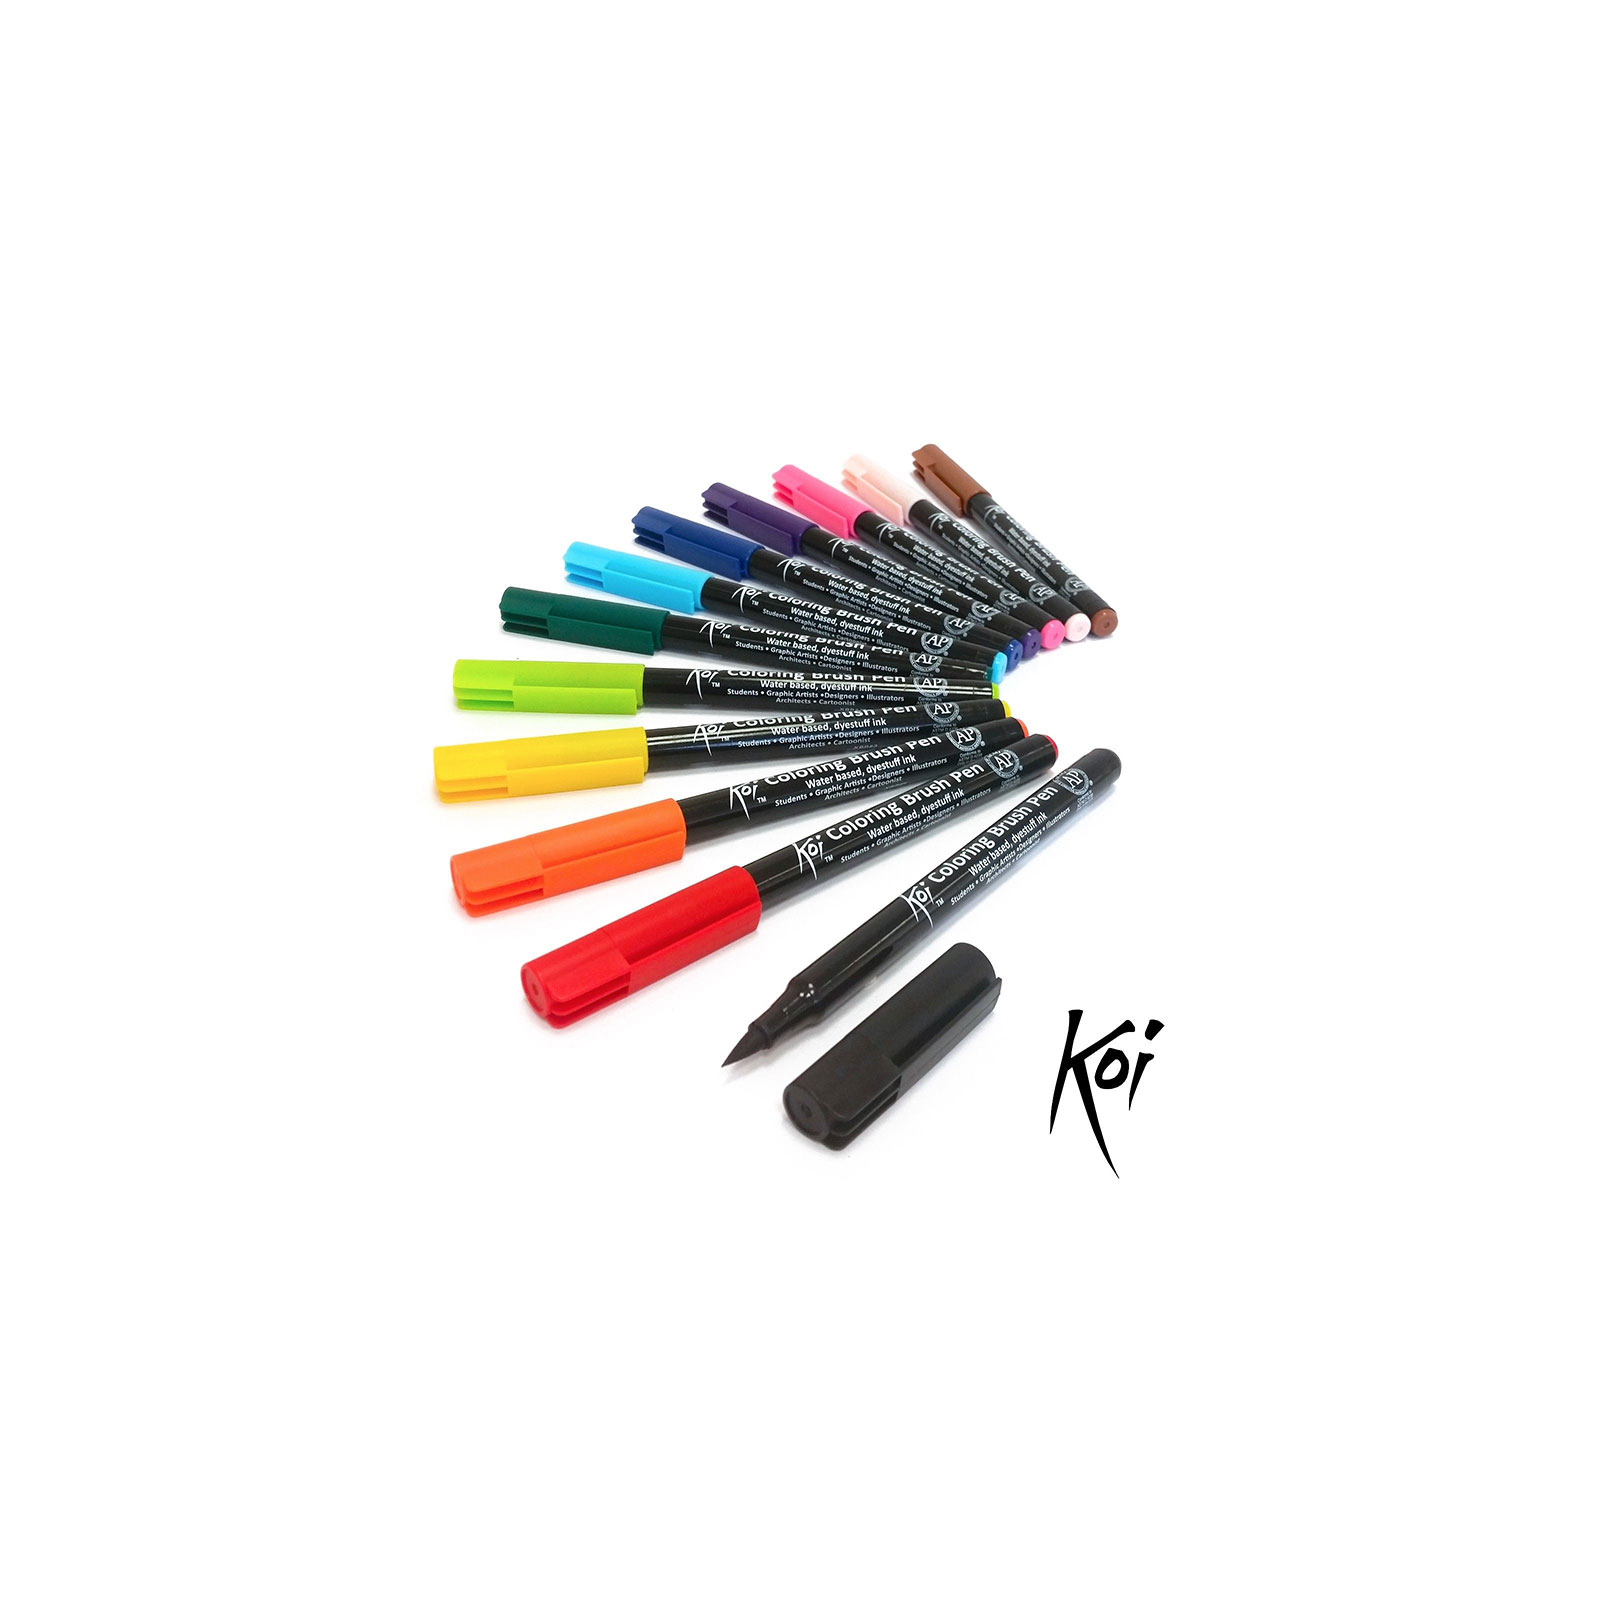 Художественный маркер KOI набор Coloring Brush Pen, 12 цветов (084511391772) изображение 2